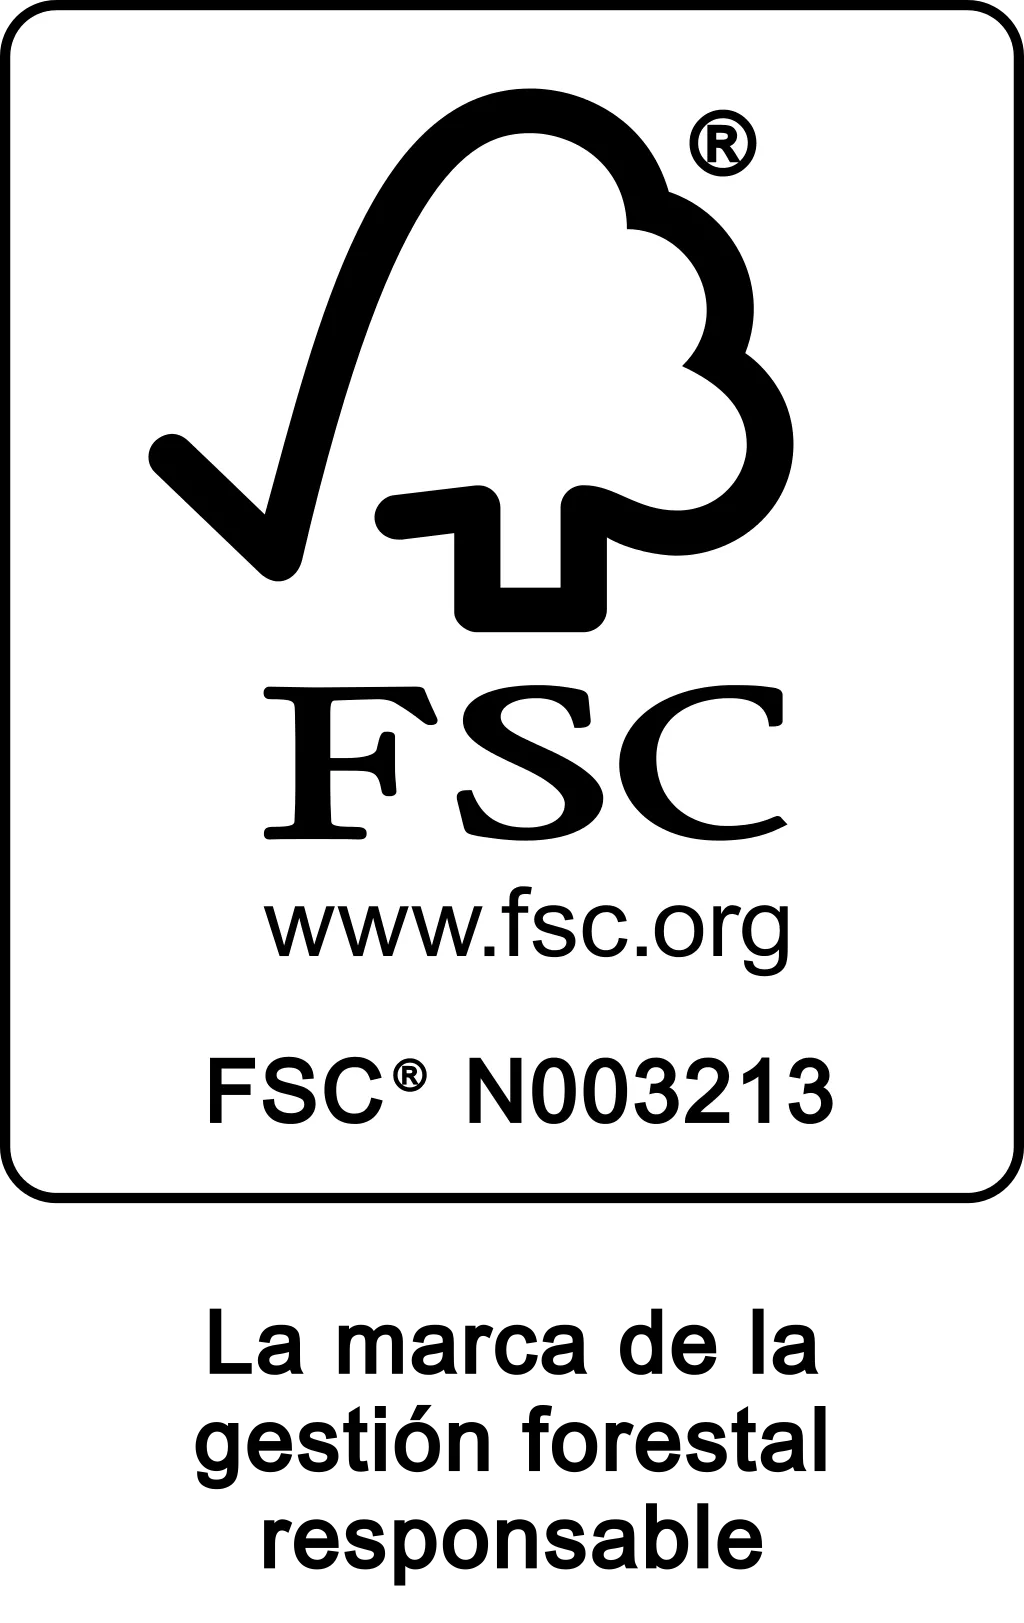 FSC - La marca de la gestión forestal responsable